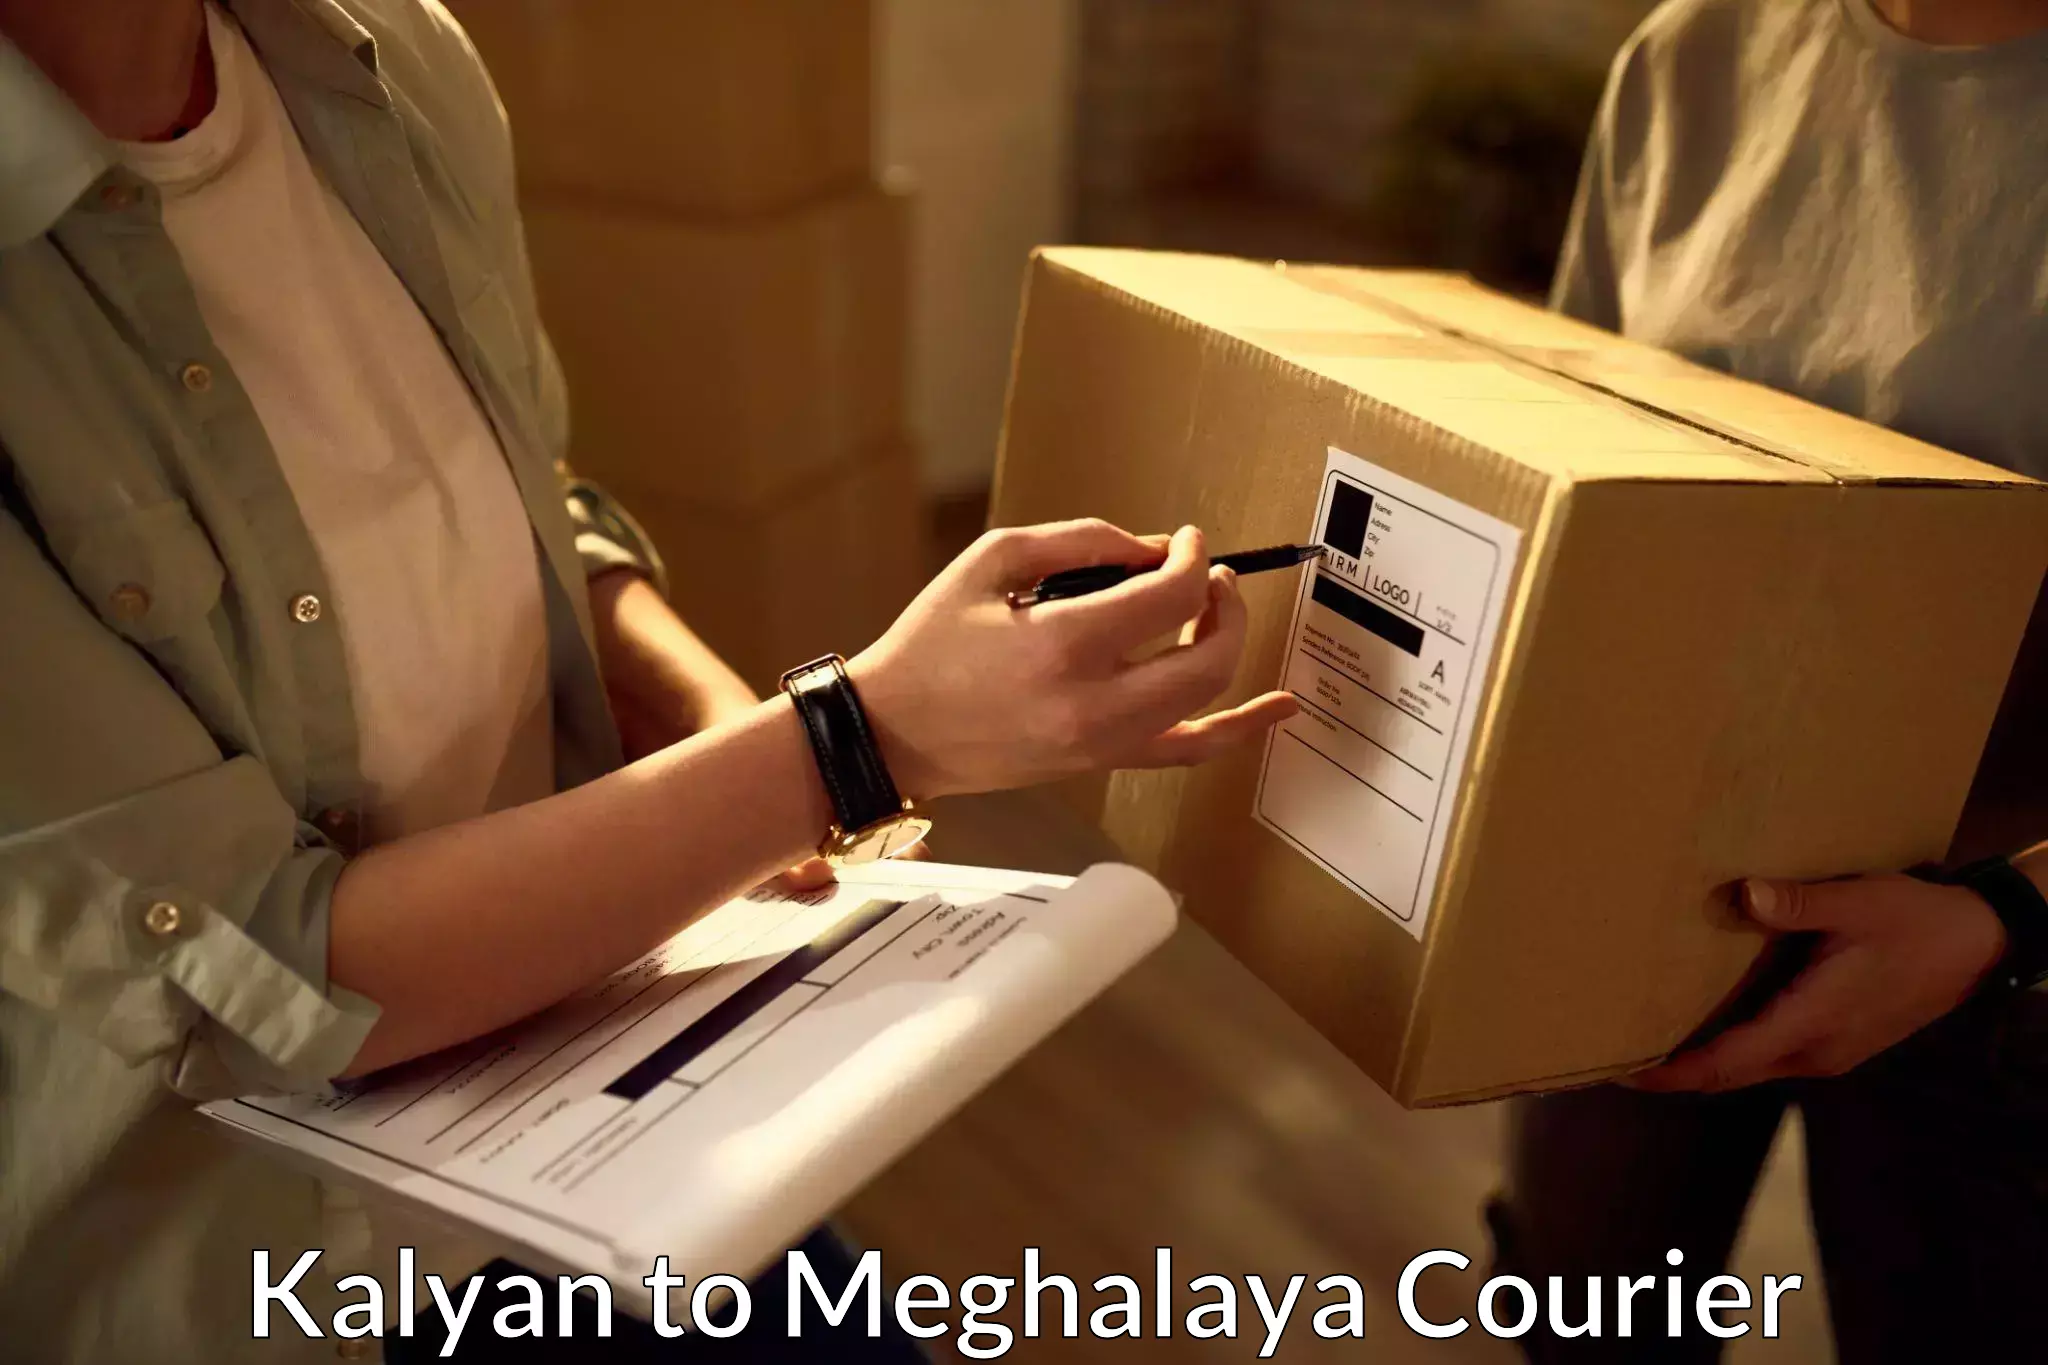 Reliable courier service Kalyan to Shillong